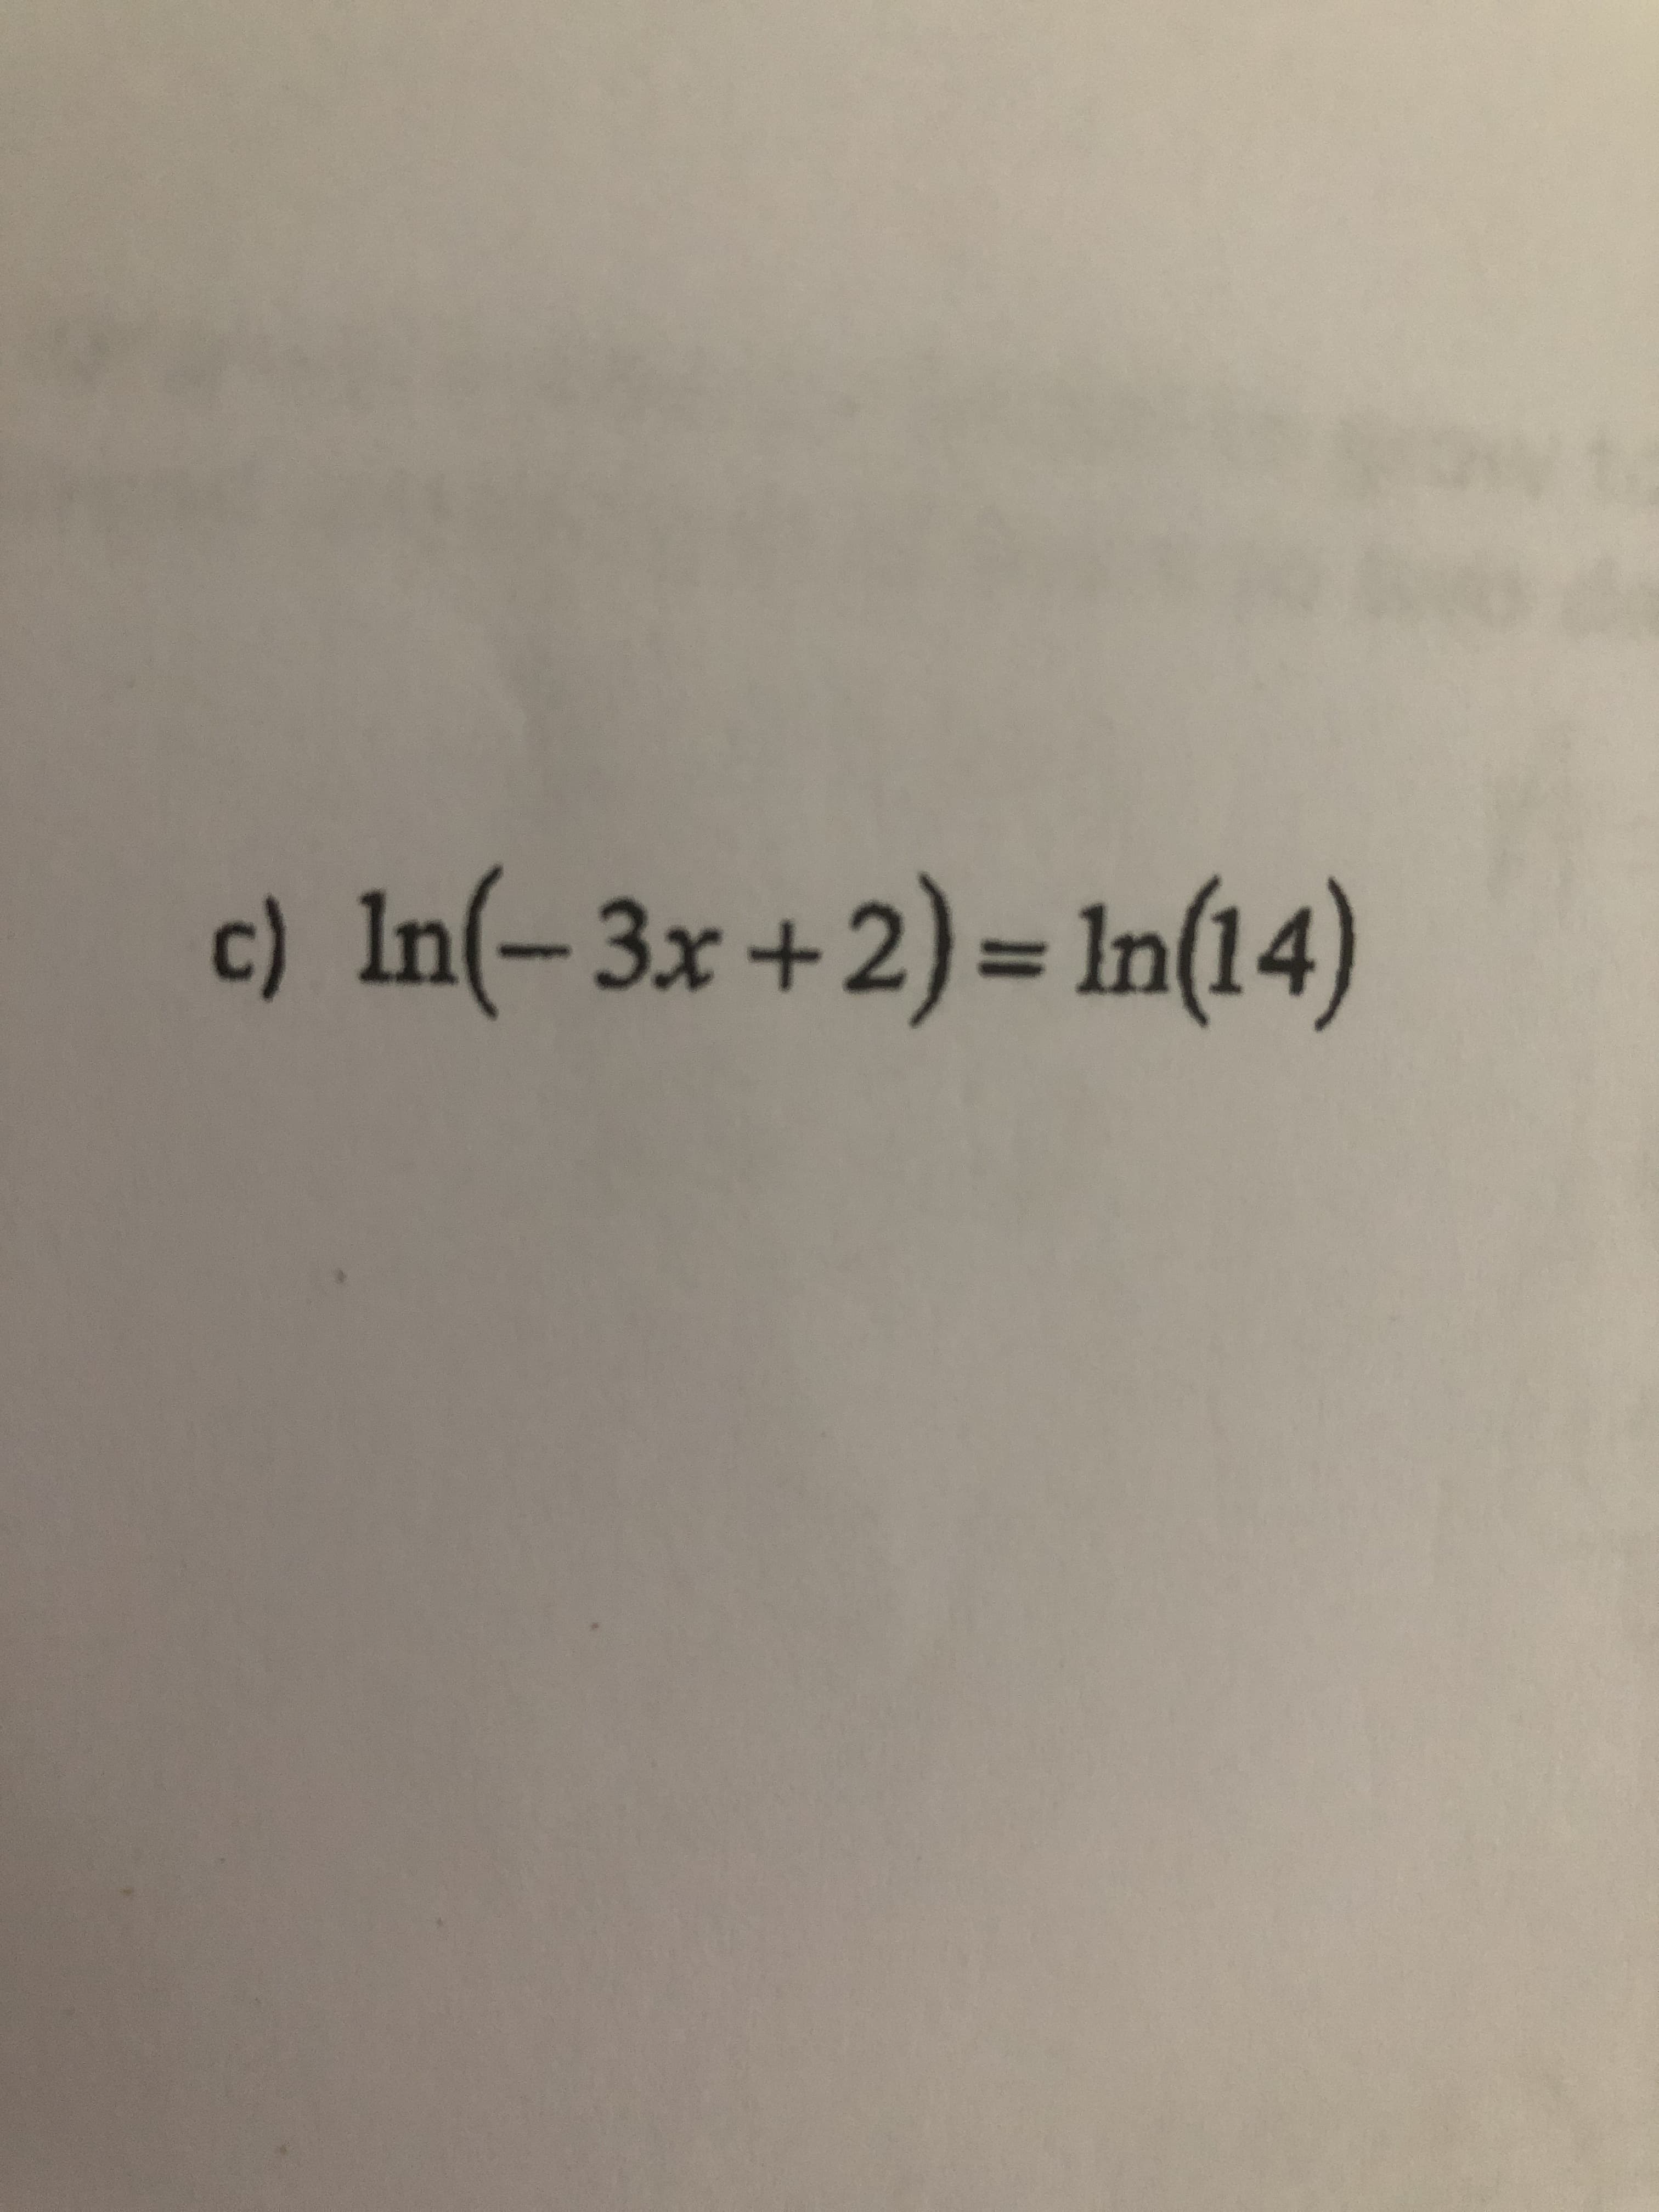 c) In(-3x+2)= In(14)
%3D
